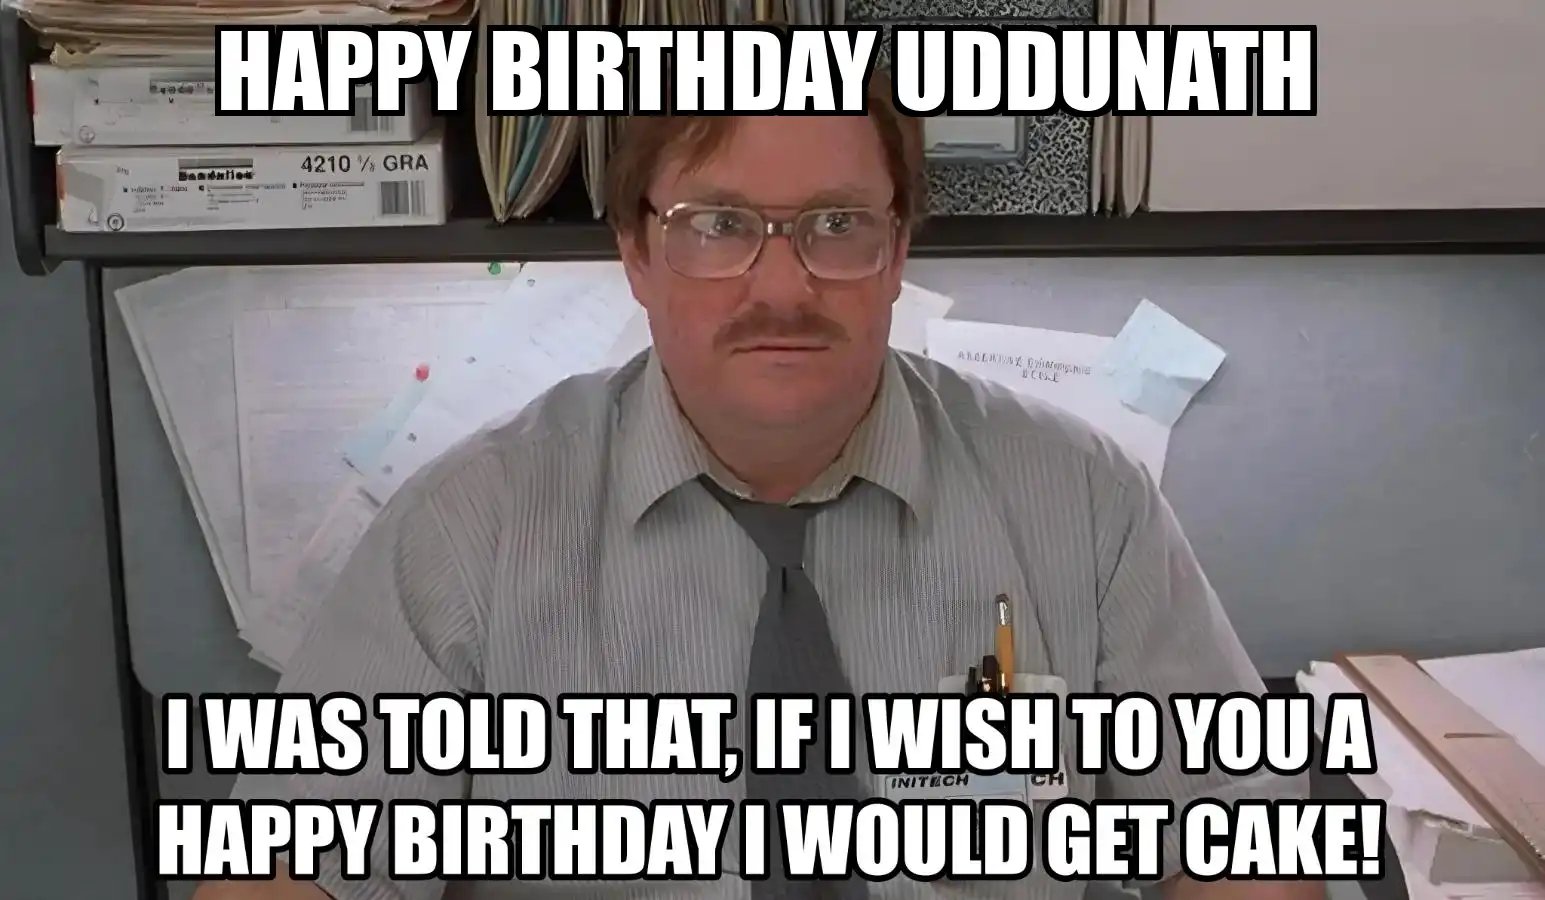 Happy Birthday Uddunath I Would Get A Cake Meme